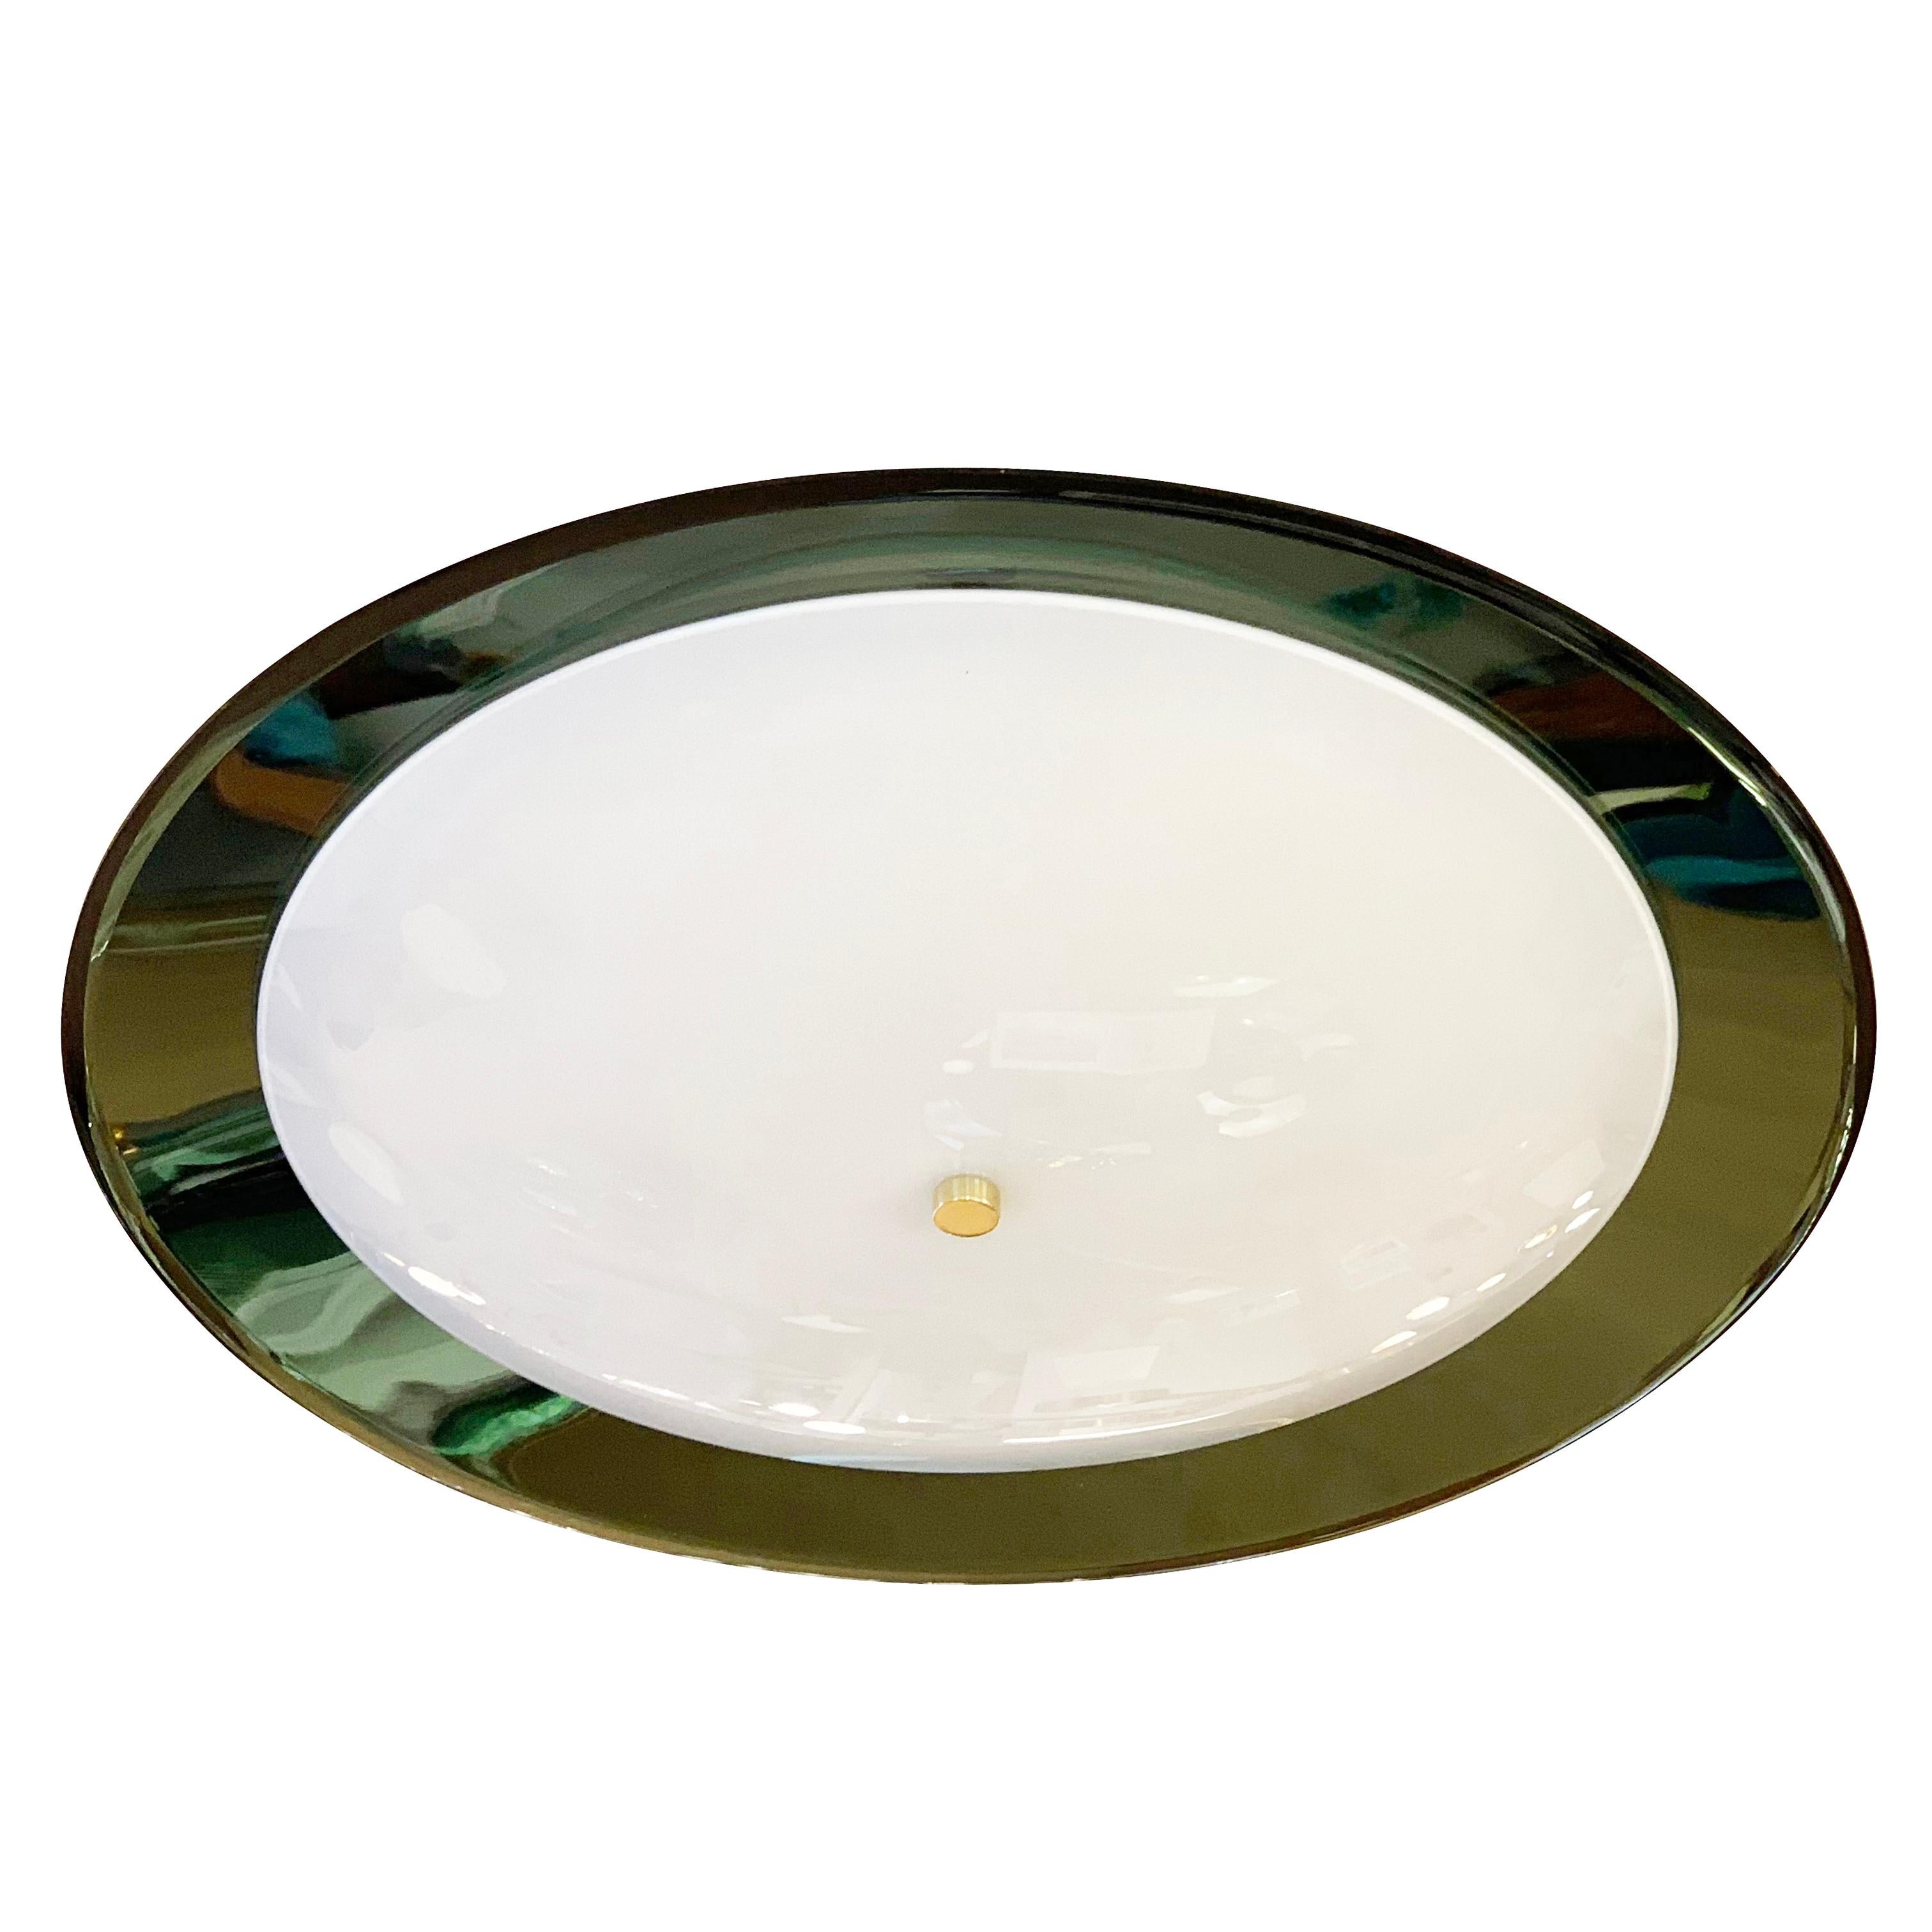 Italienischer Mid-Century-Kronleuchter von Cristal Art mit einem großen grünen konvexen Spiegelglas über einem kleineren konkaven Opalglasdiffusor. Fasst 3 Lichtquellen.

Zustand: Ausgezeichneter Vintage-Zustand, leichte Abnutzungserscheinungen